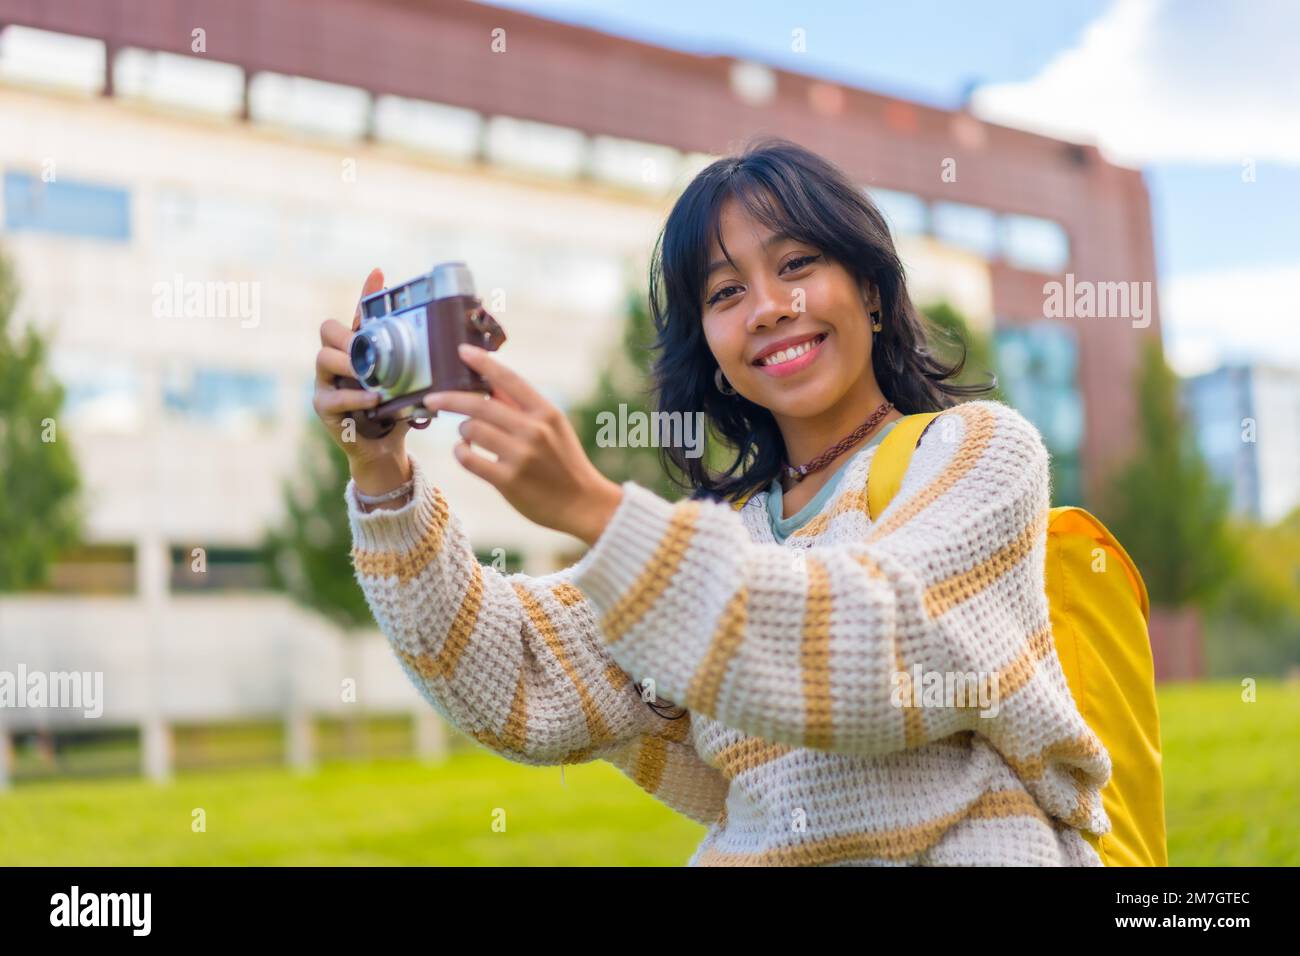 Fotografia asiatica giovane donna con una fotocamera vintage in visita di un parco cittadino, zaino in spalla concetto di viaggiatore Foto Stock